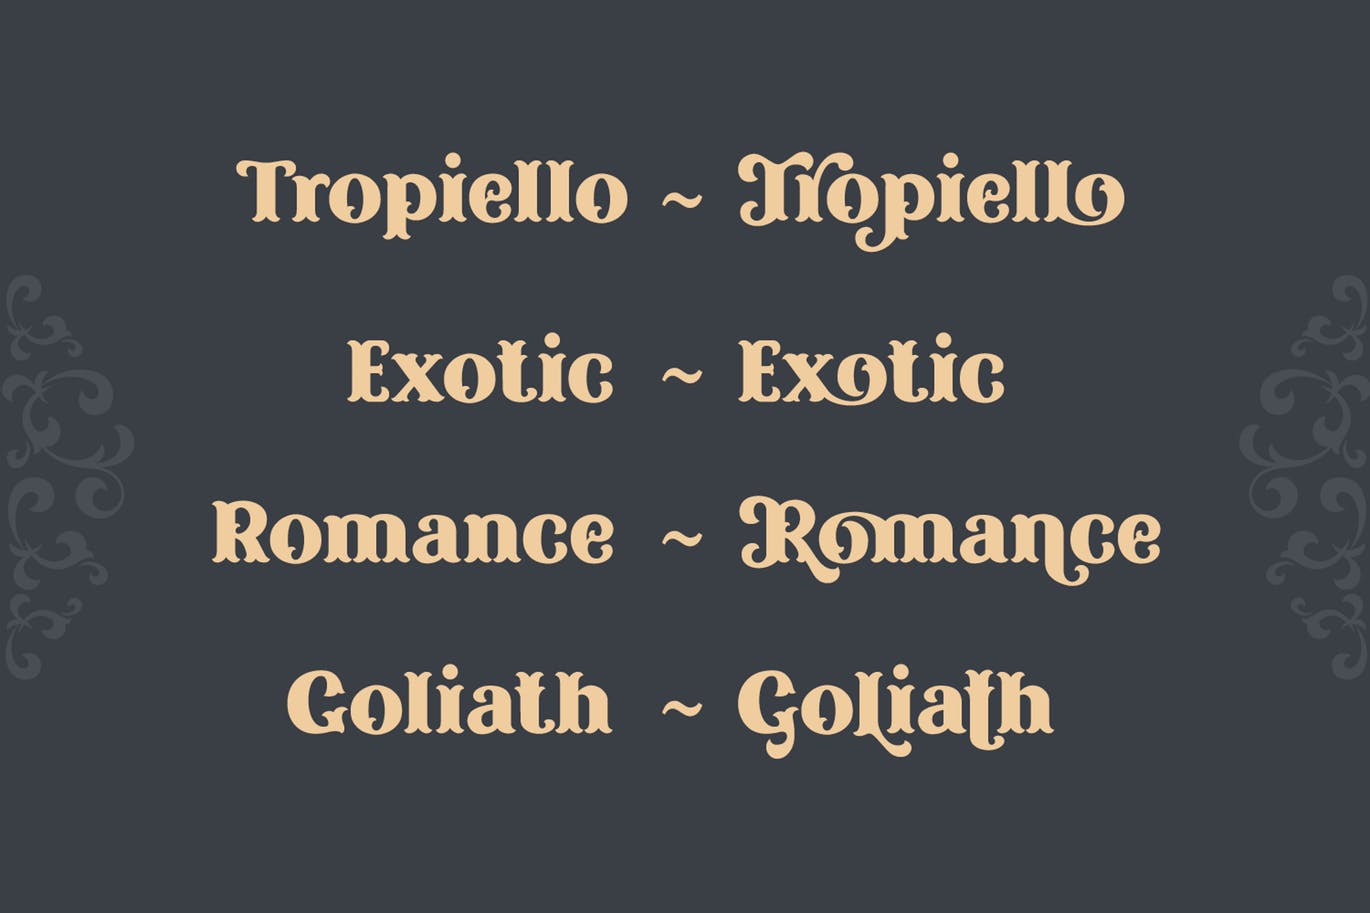 复古风格精美英文衬线装饰字体非凡图库精选下载 Tropiello Font插图(4)